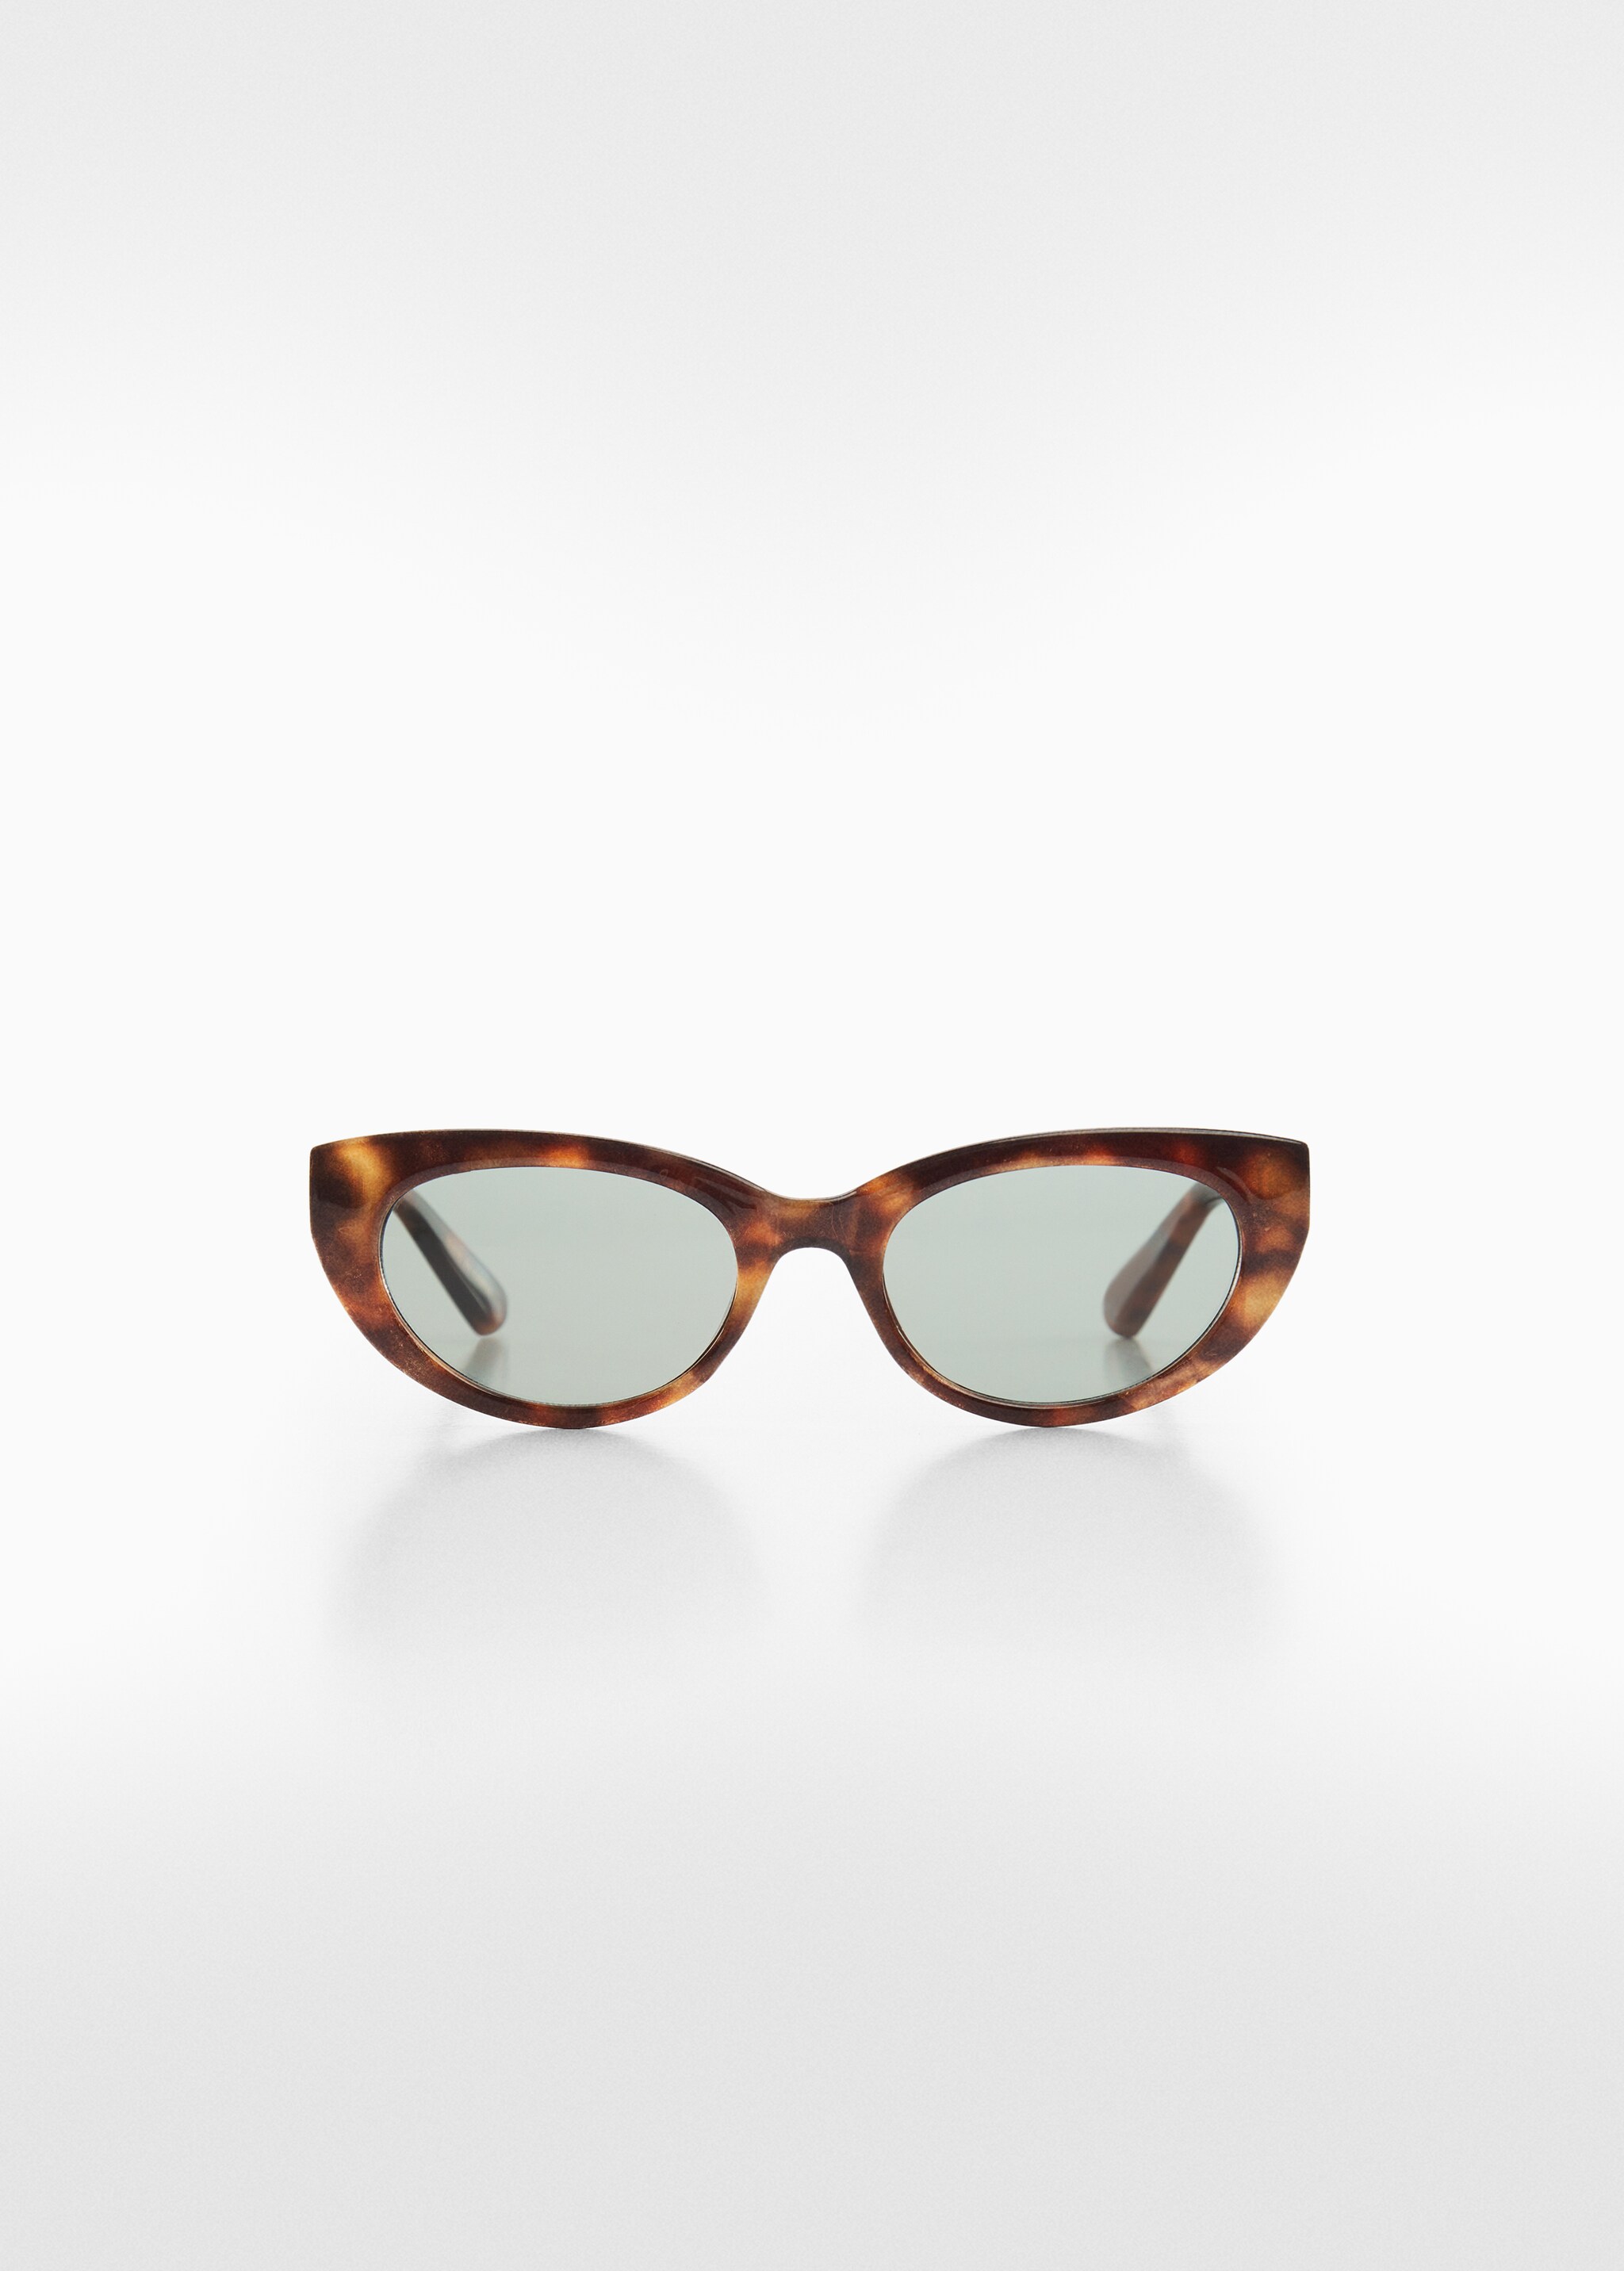 Солнцезащитные очки в стиле ретро - Изделие без модели